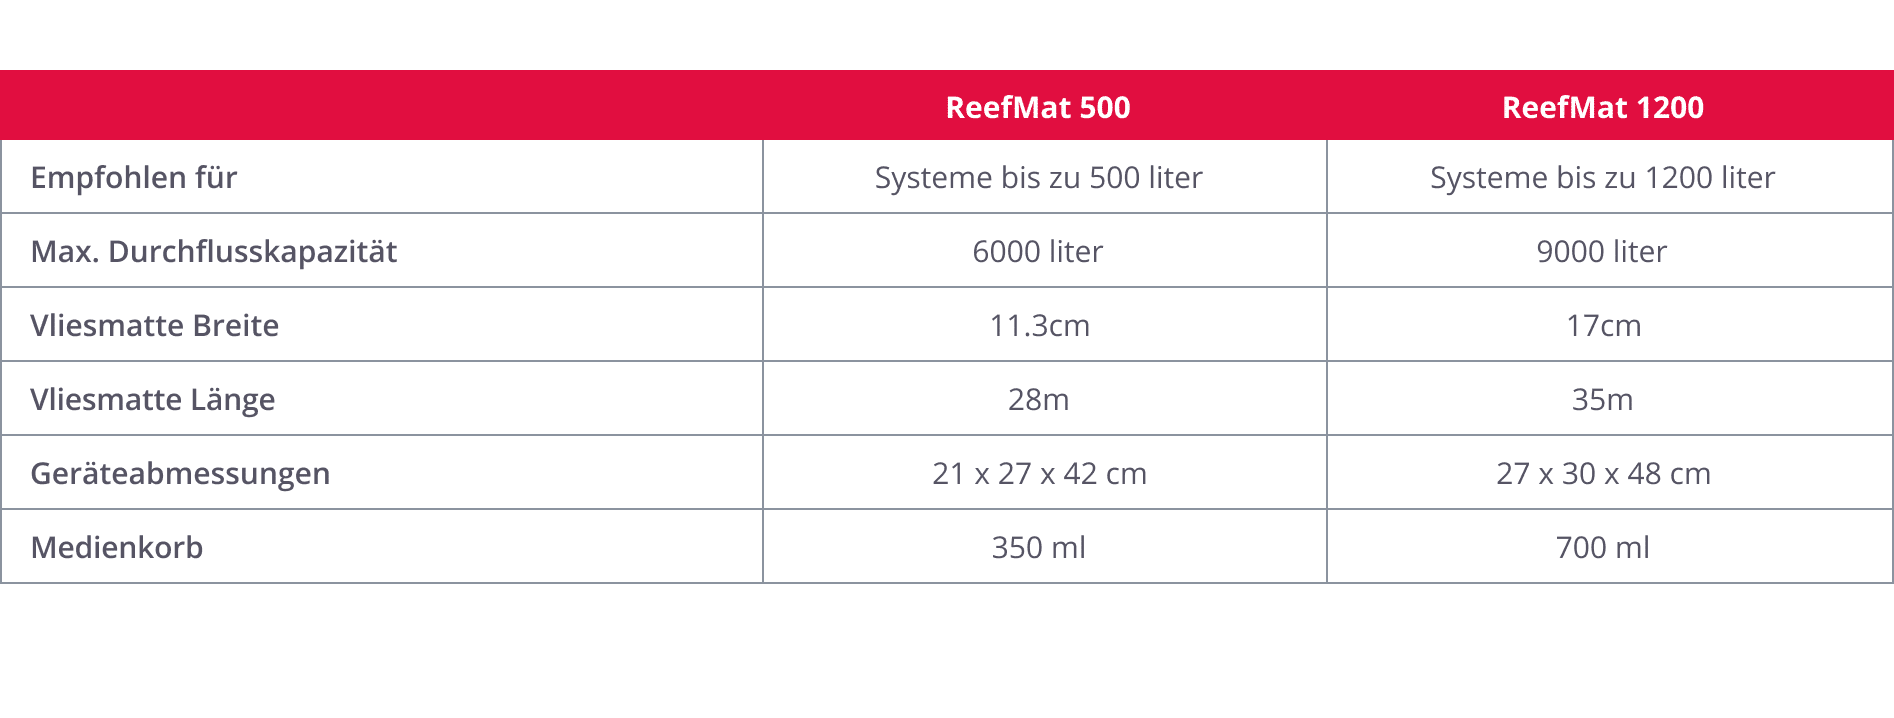 ReefMat 500 (incluindo serviços em nuvem)